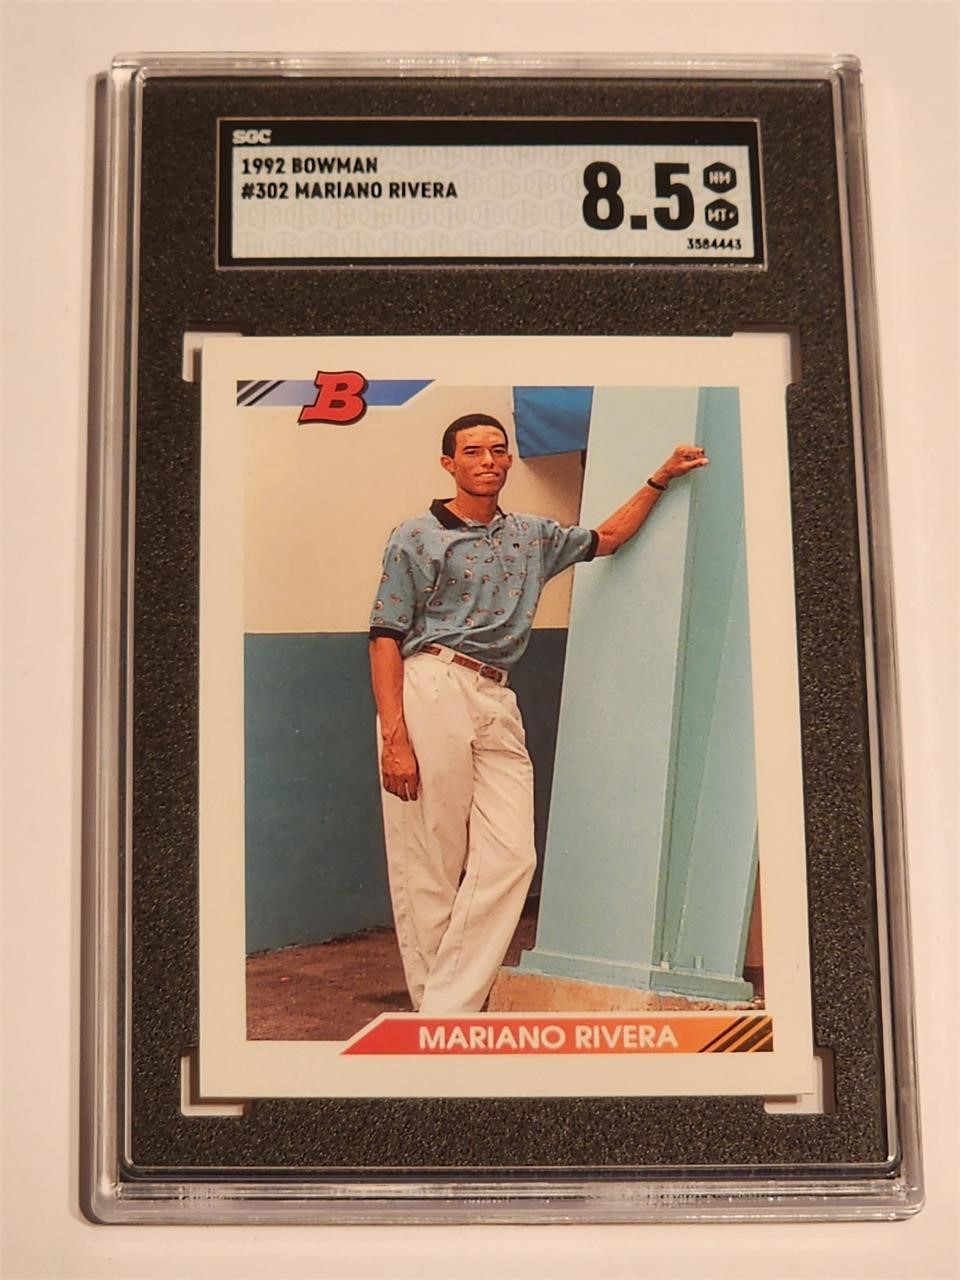 1992 BOWMAN BASEBALL CARD SGC 8.5 MARIANO RIVERA